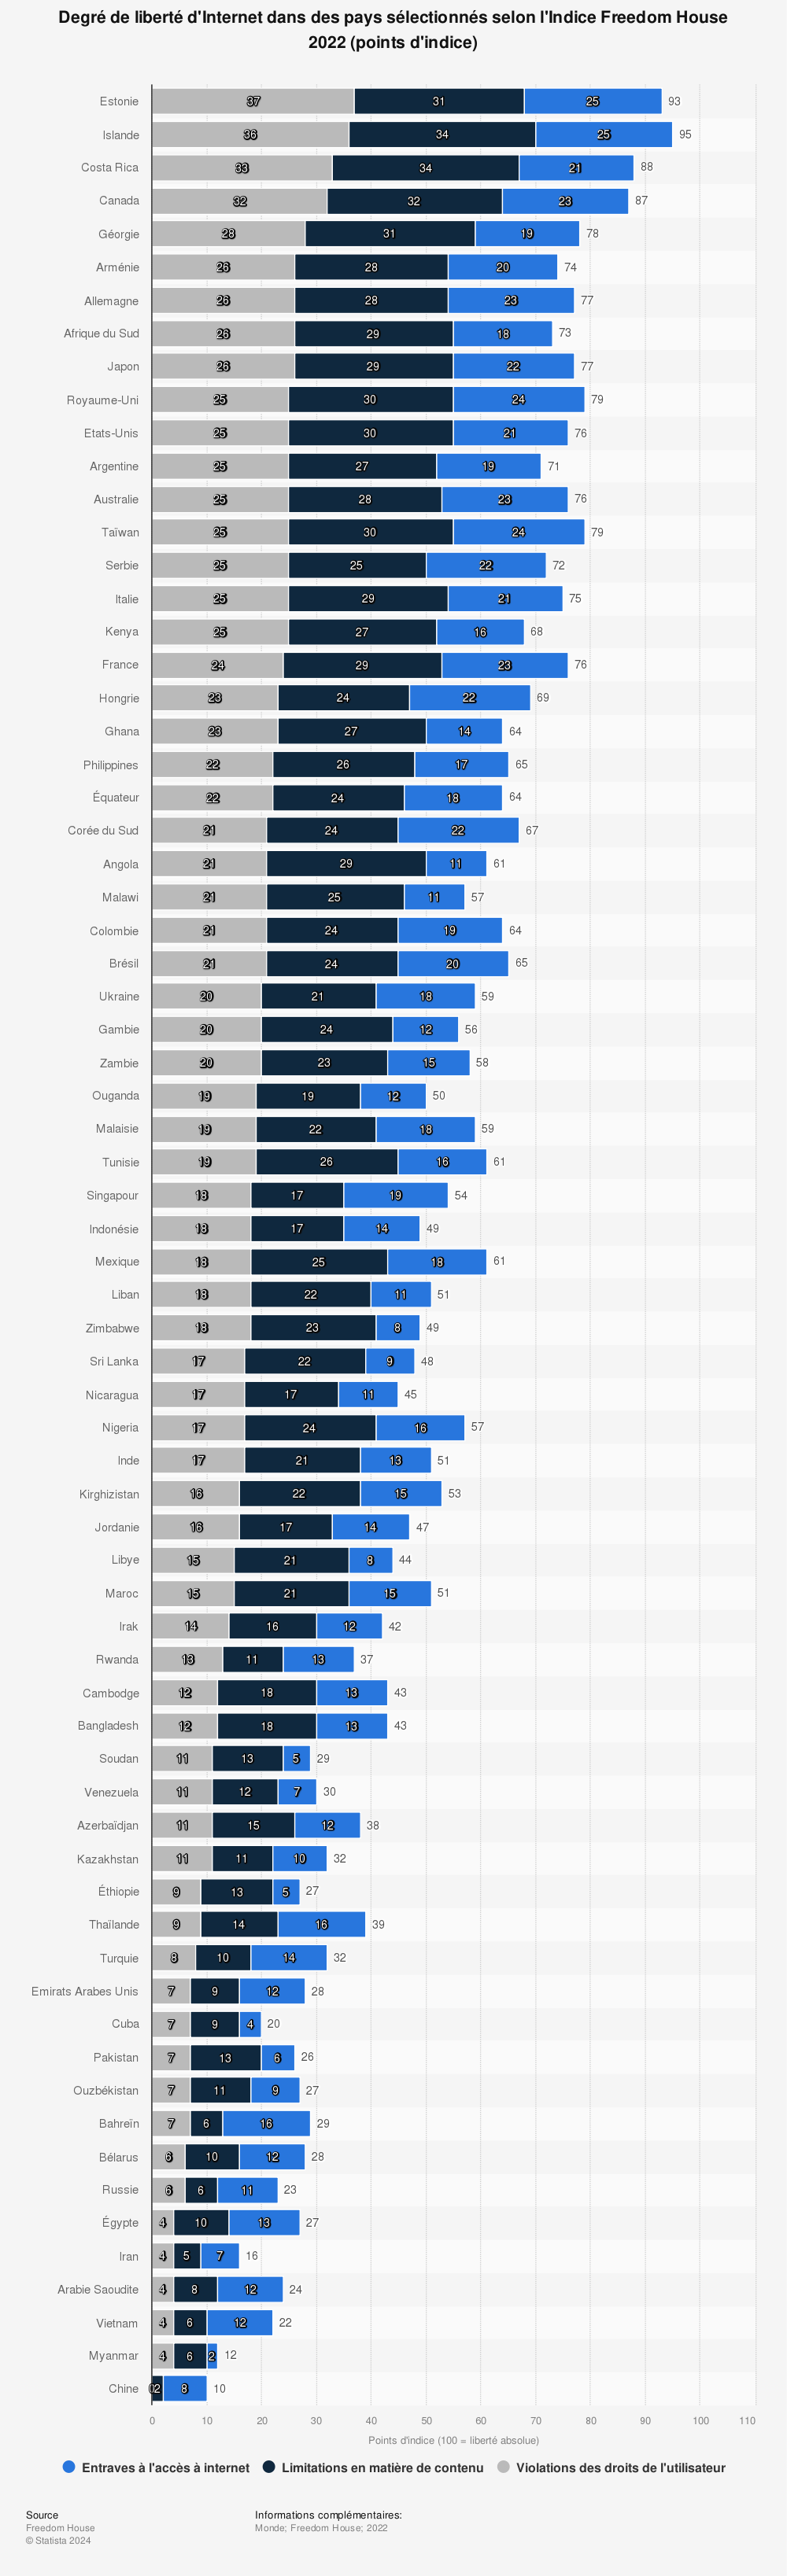 Statistique: Degré de liberté d'Internet dans des pays sélectionnés selon l'Indice Freedom House 2022 (points d'indice) | Statista